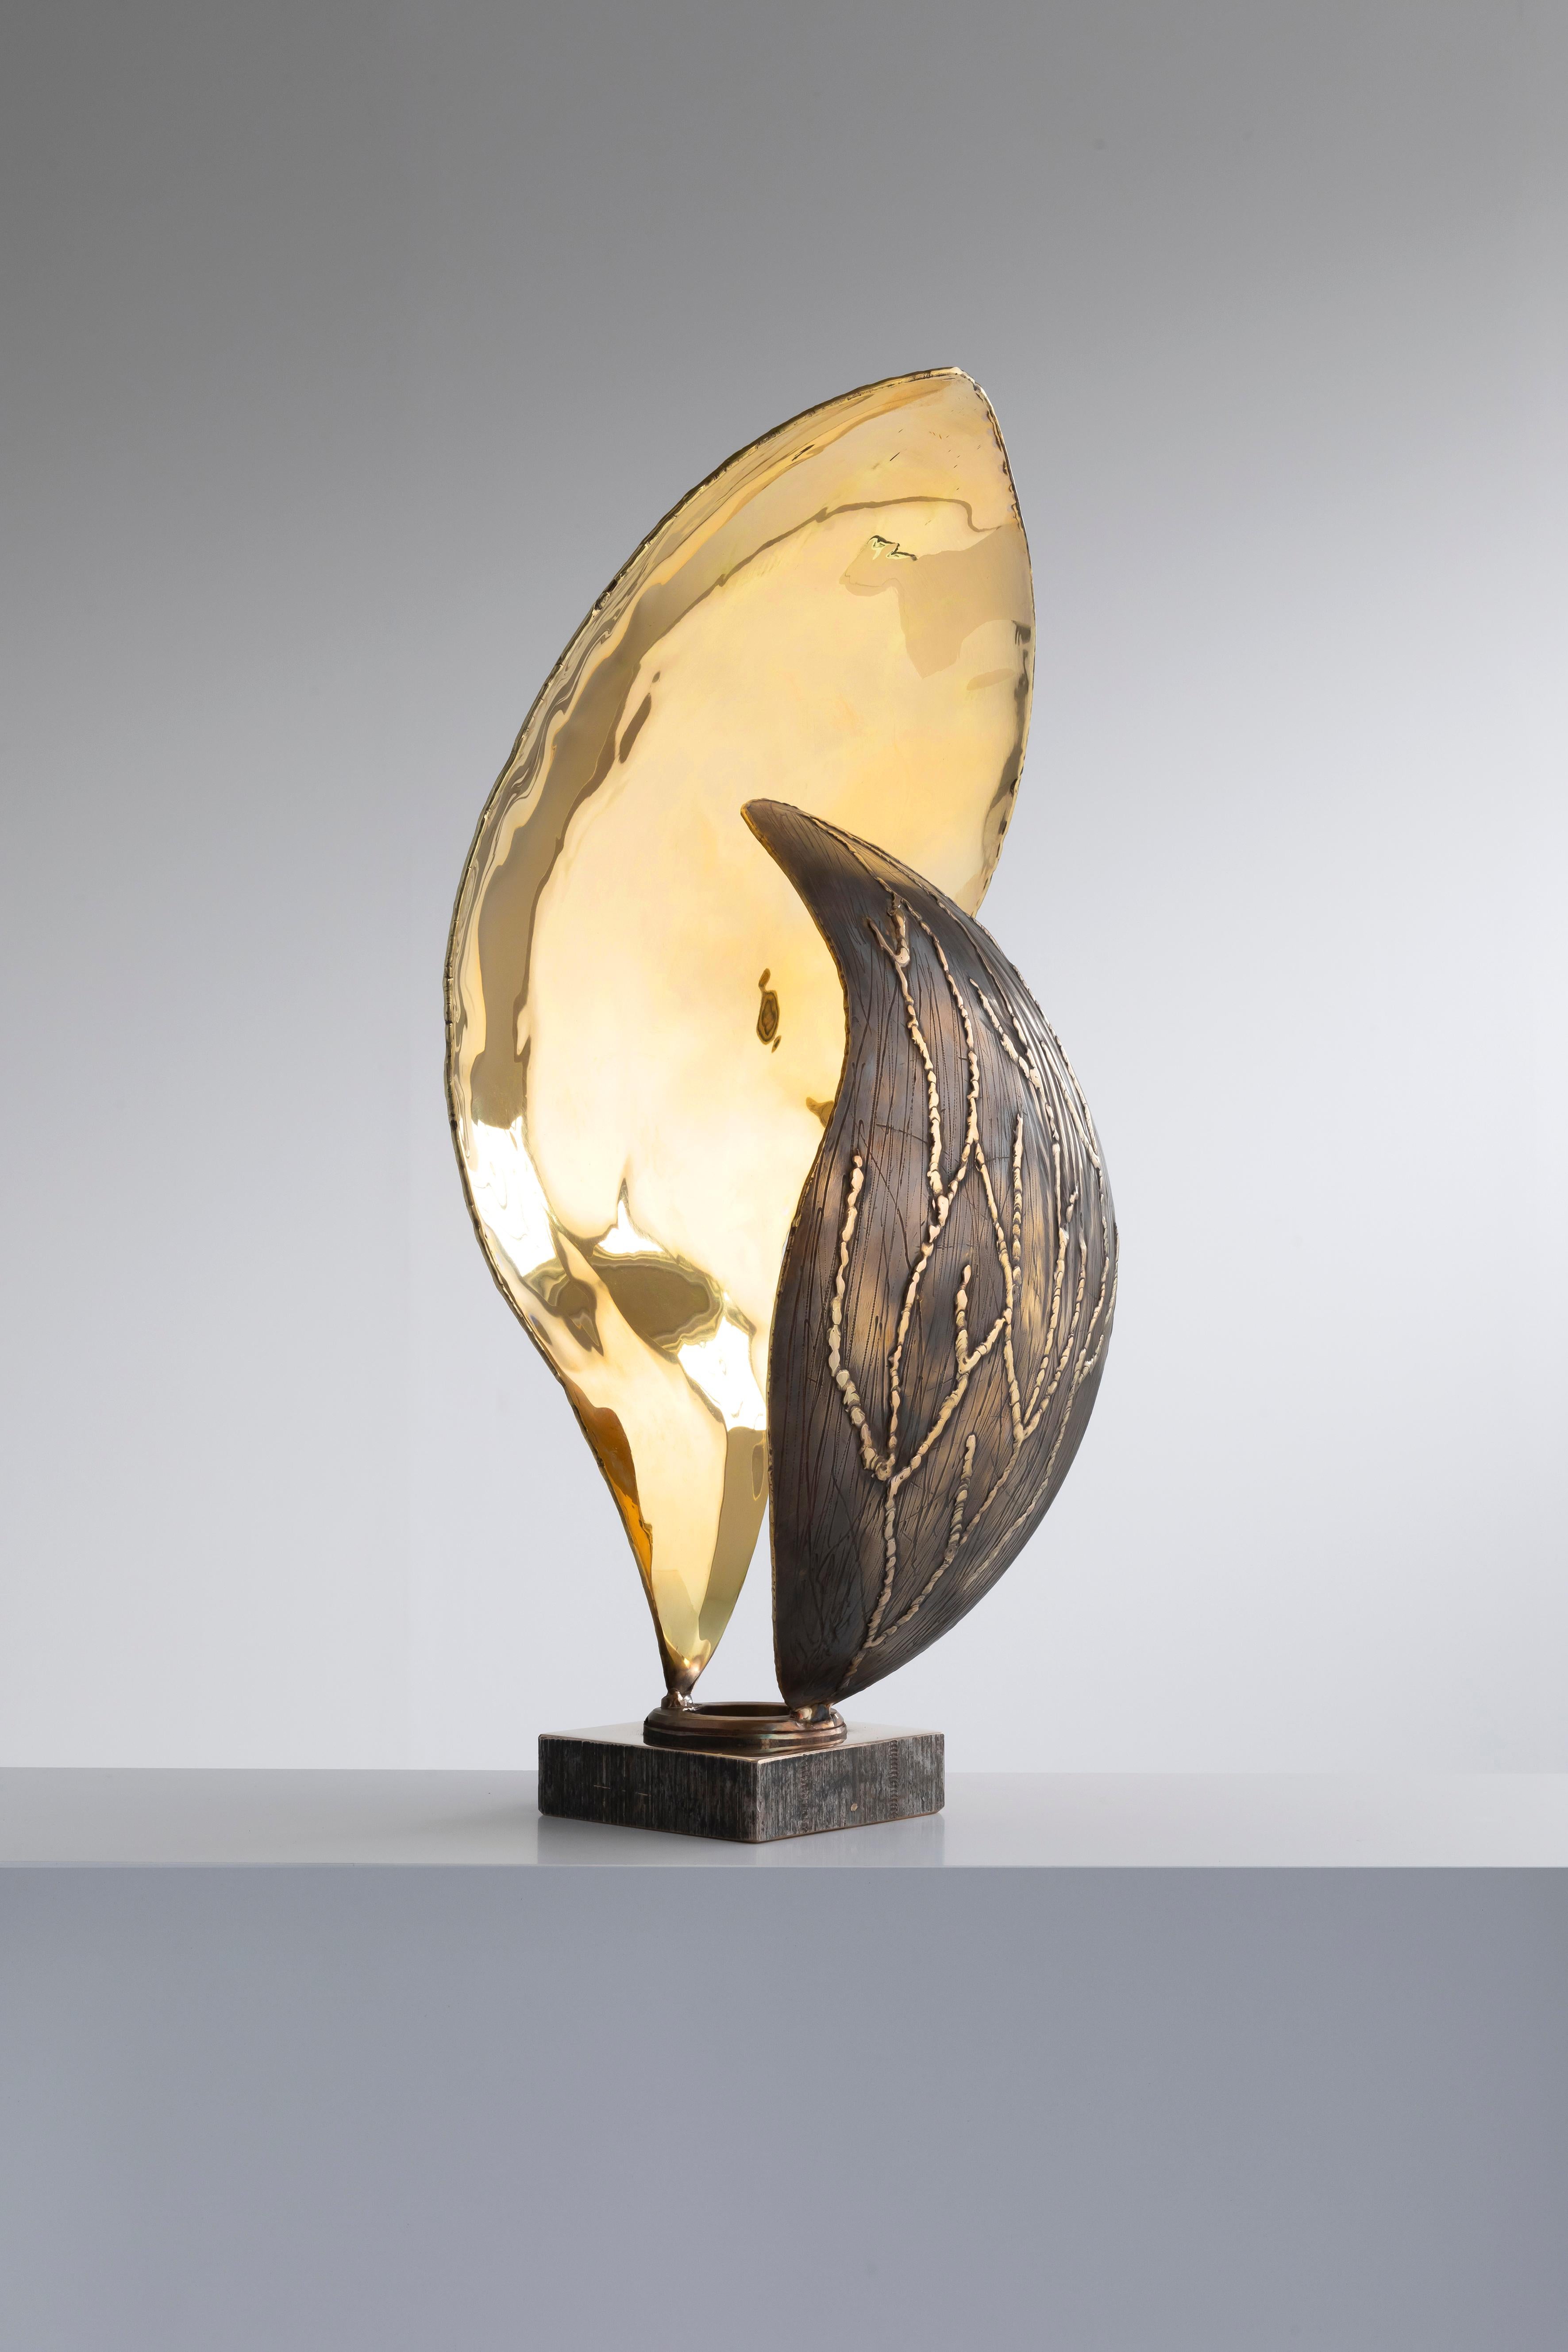 Peitil-Lampe von Samuel Costantini
Vollständig von der Künstlerin handgefertigt
Ausgabe 9+ 1 AP
Abmessungen: Durchmesser 17 x Höhe 45 cm
MATERIALIEN: handgearbeitetes Kupferblech

Zwei Blütenblätter aus Messing ruhen auf einem Bronzesockel, der das